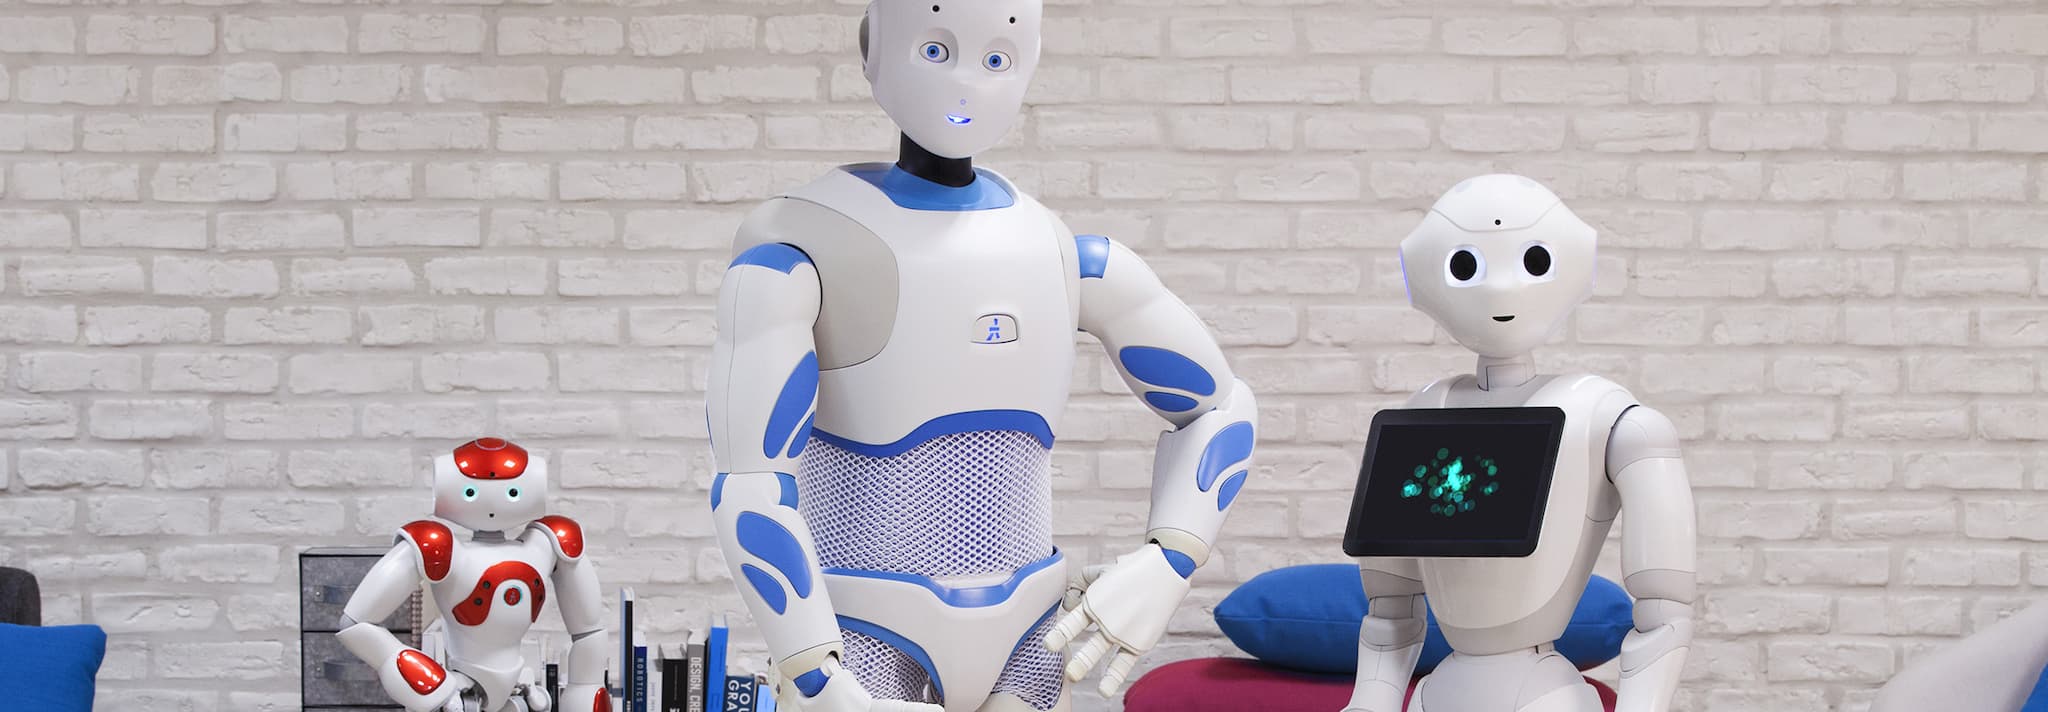 Softbank Robotics